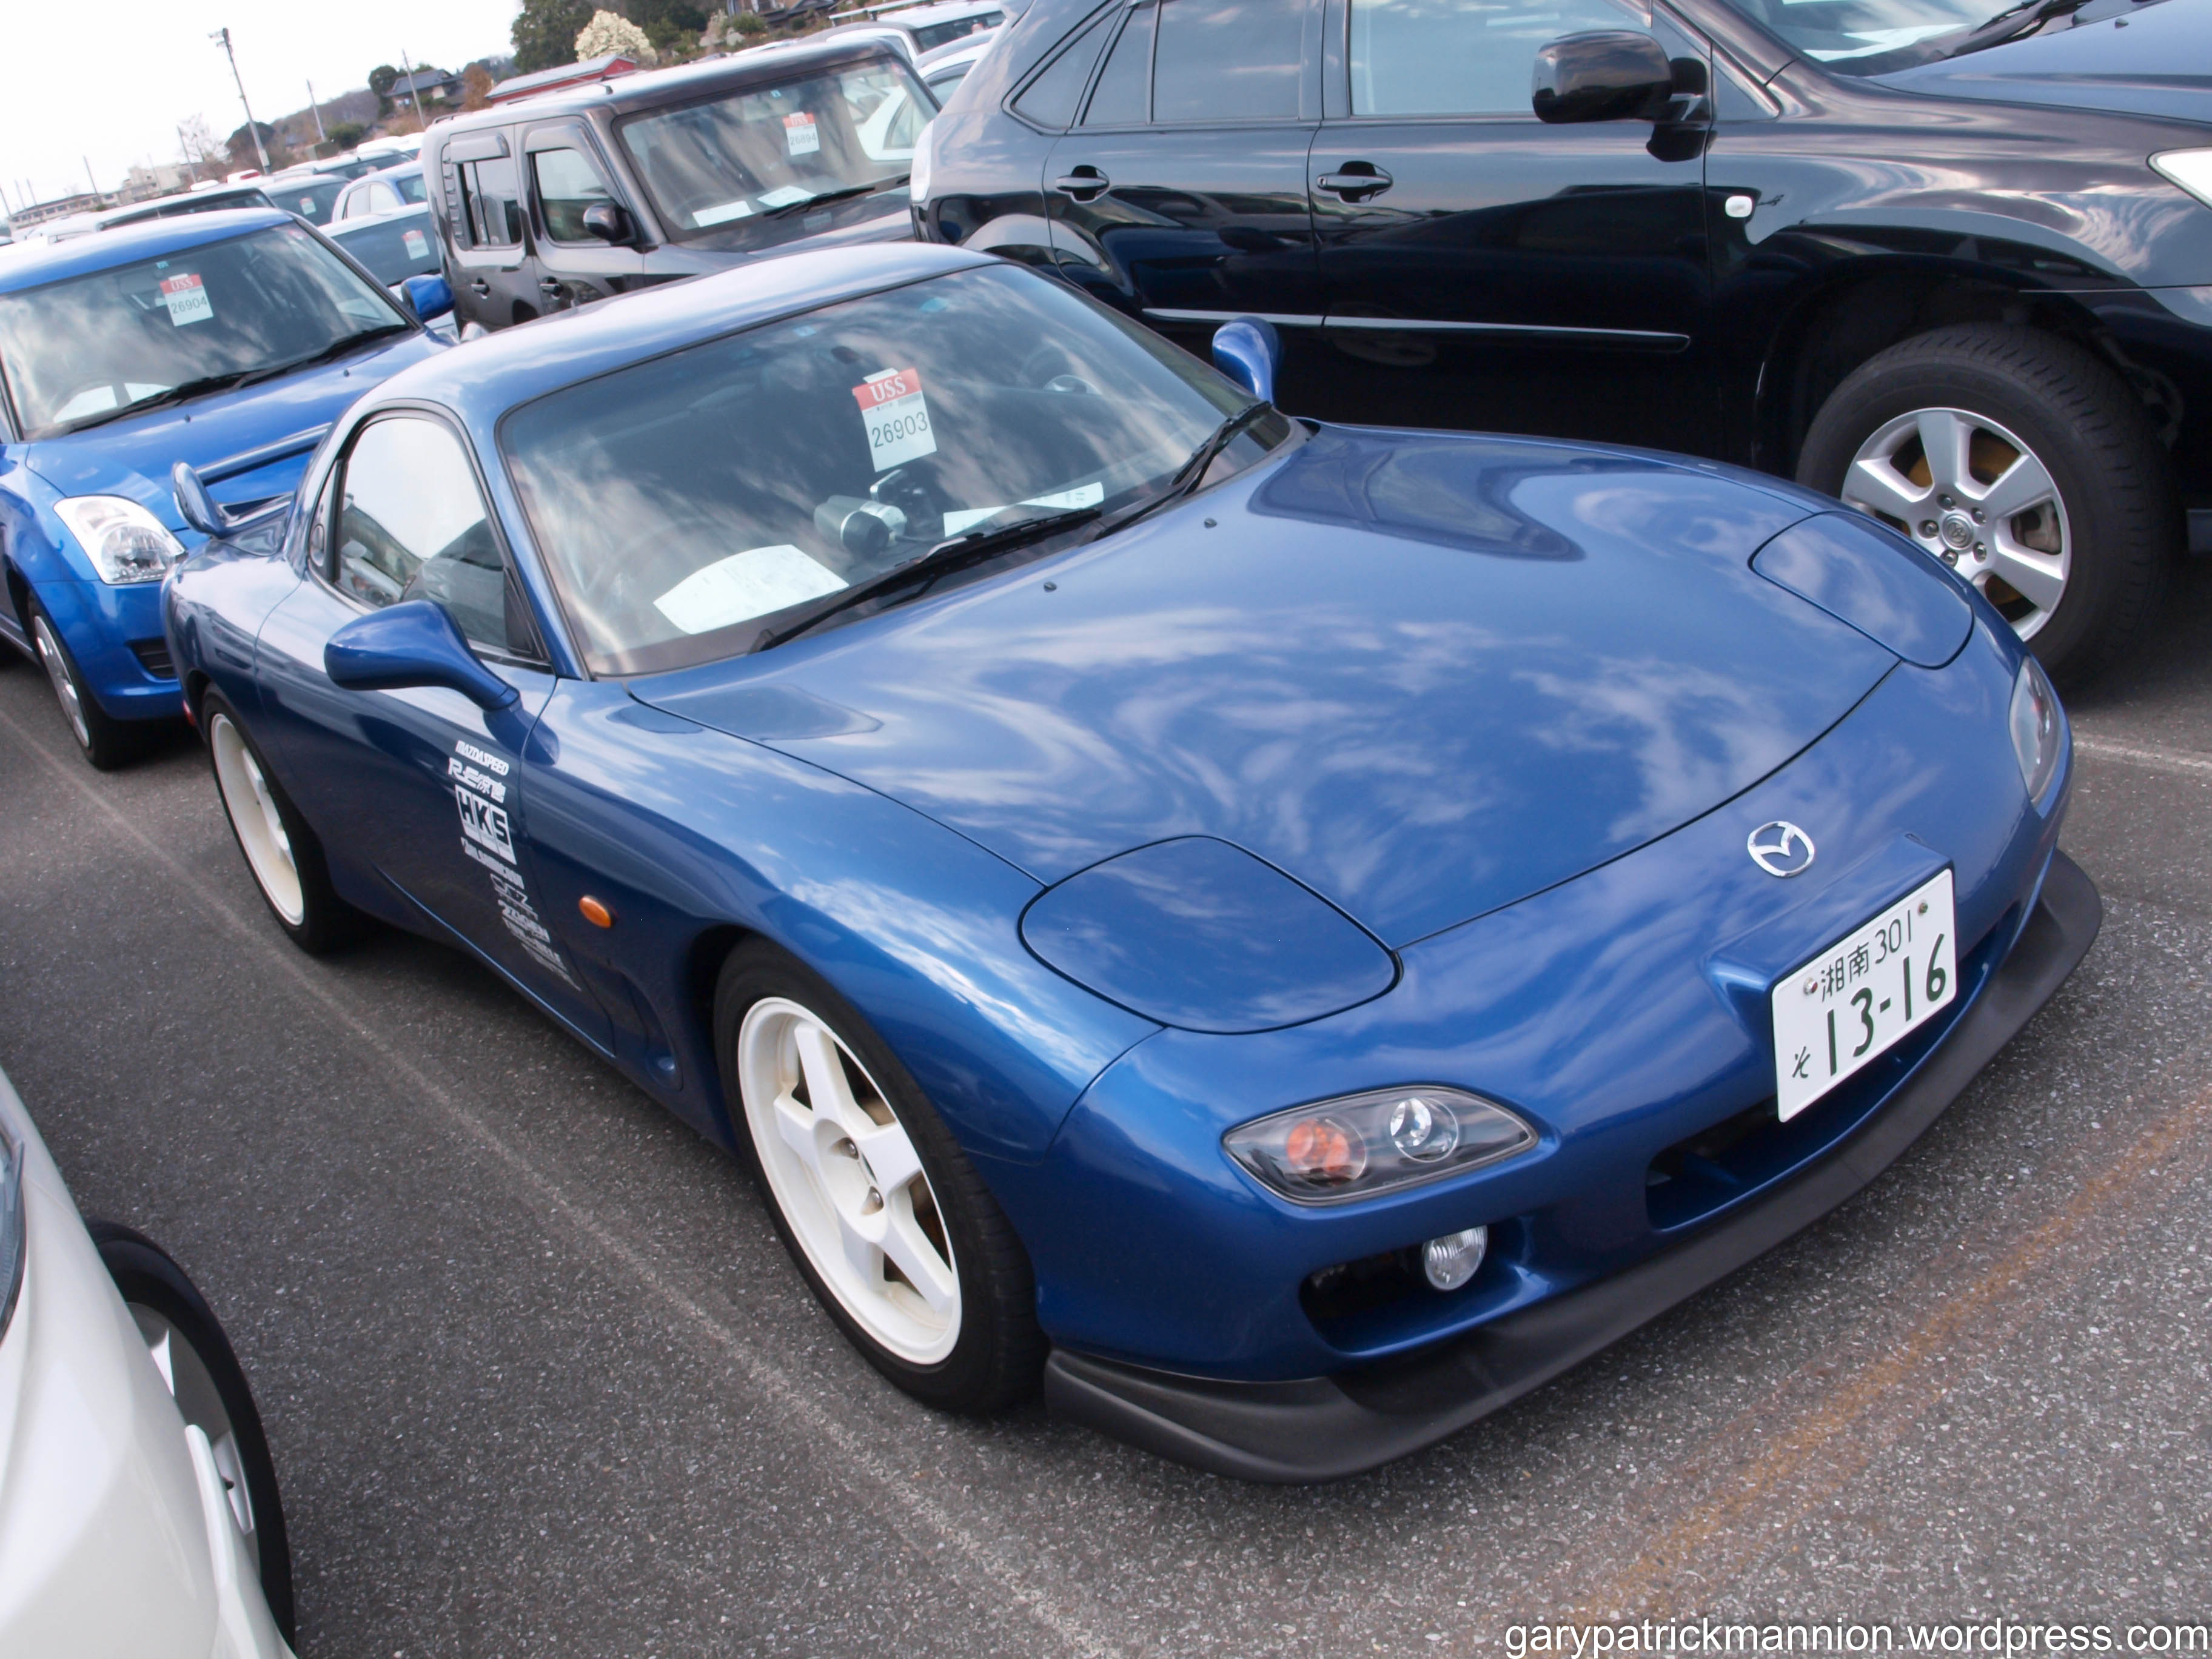 Купить б у машину из японии. Машины (синяя). Авто из Японии. Японский праворульный автомобиль. Япония праворульные машины.